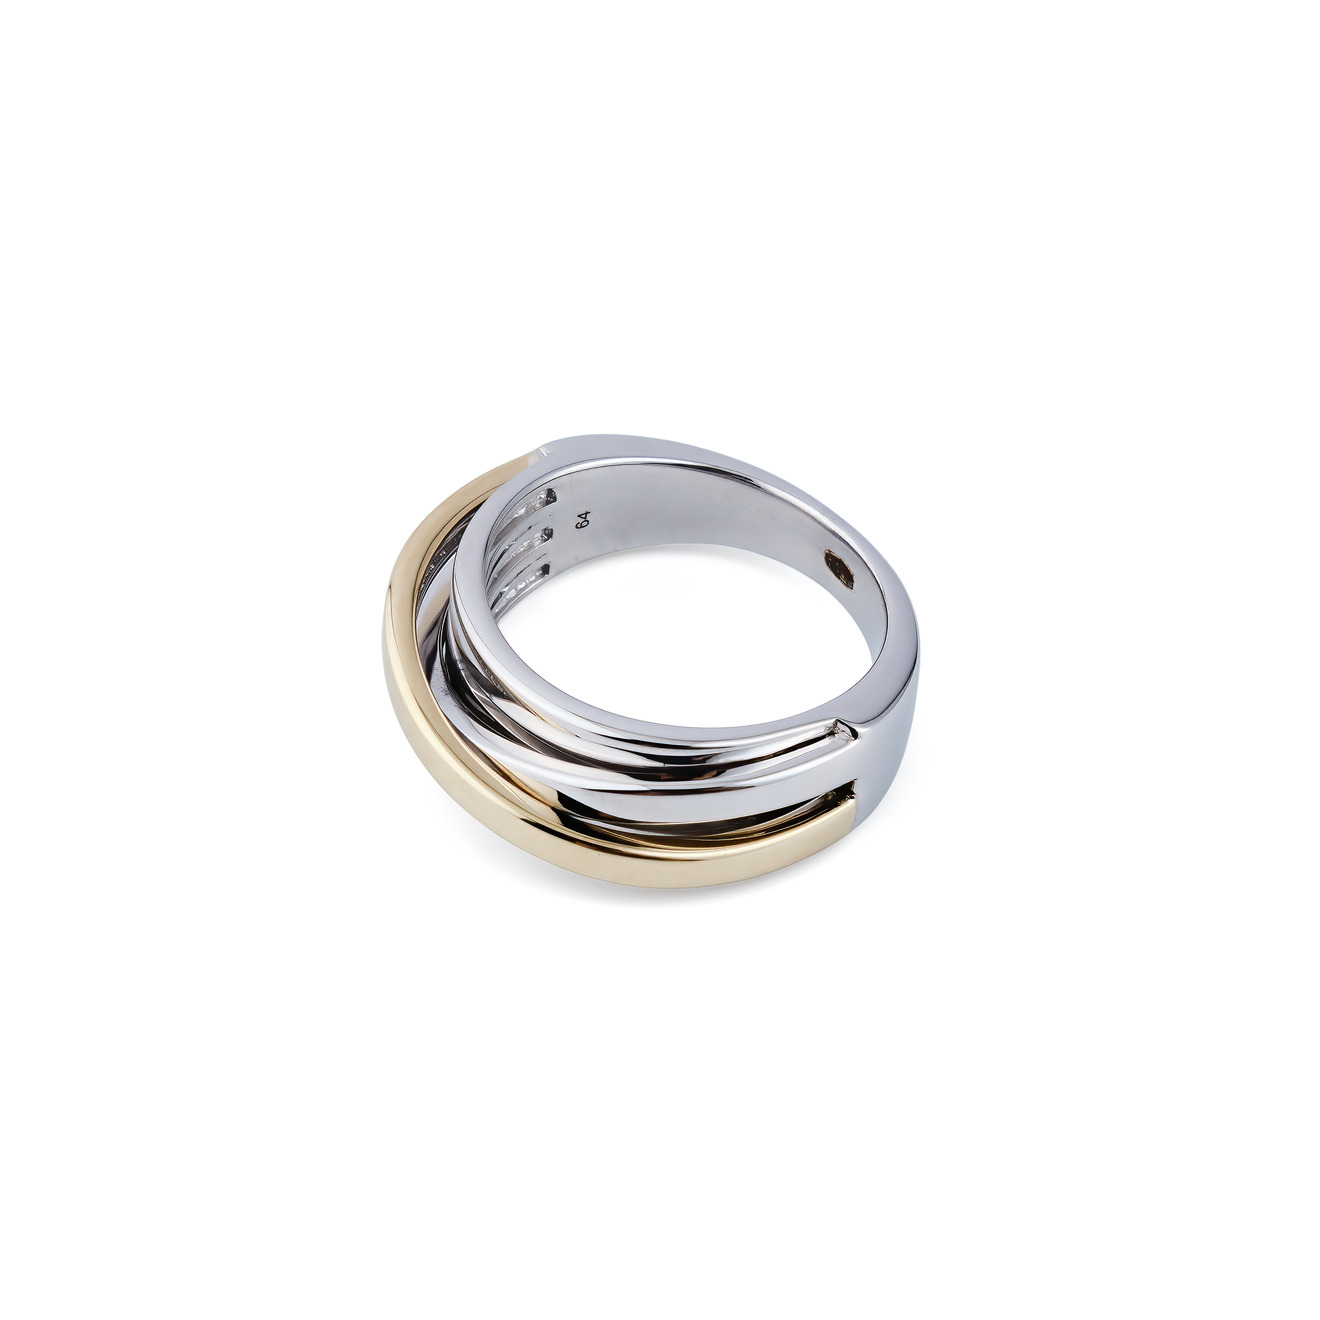 Tom Wood Тонкое биколорное кольцо Orb из серебра kaiser sxp 90 04 orb dushyevaya sistyema tyemno korichnyevyy